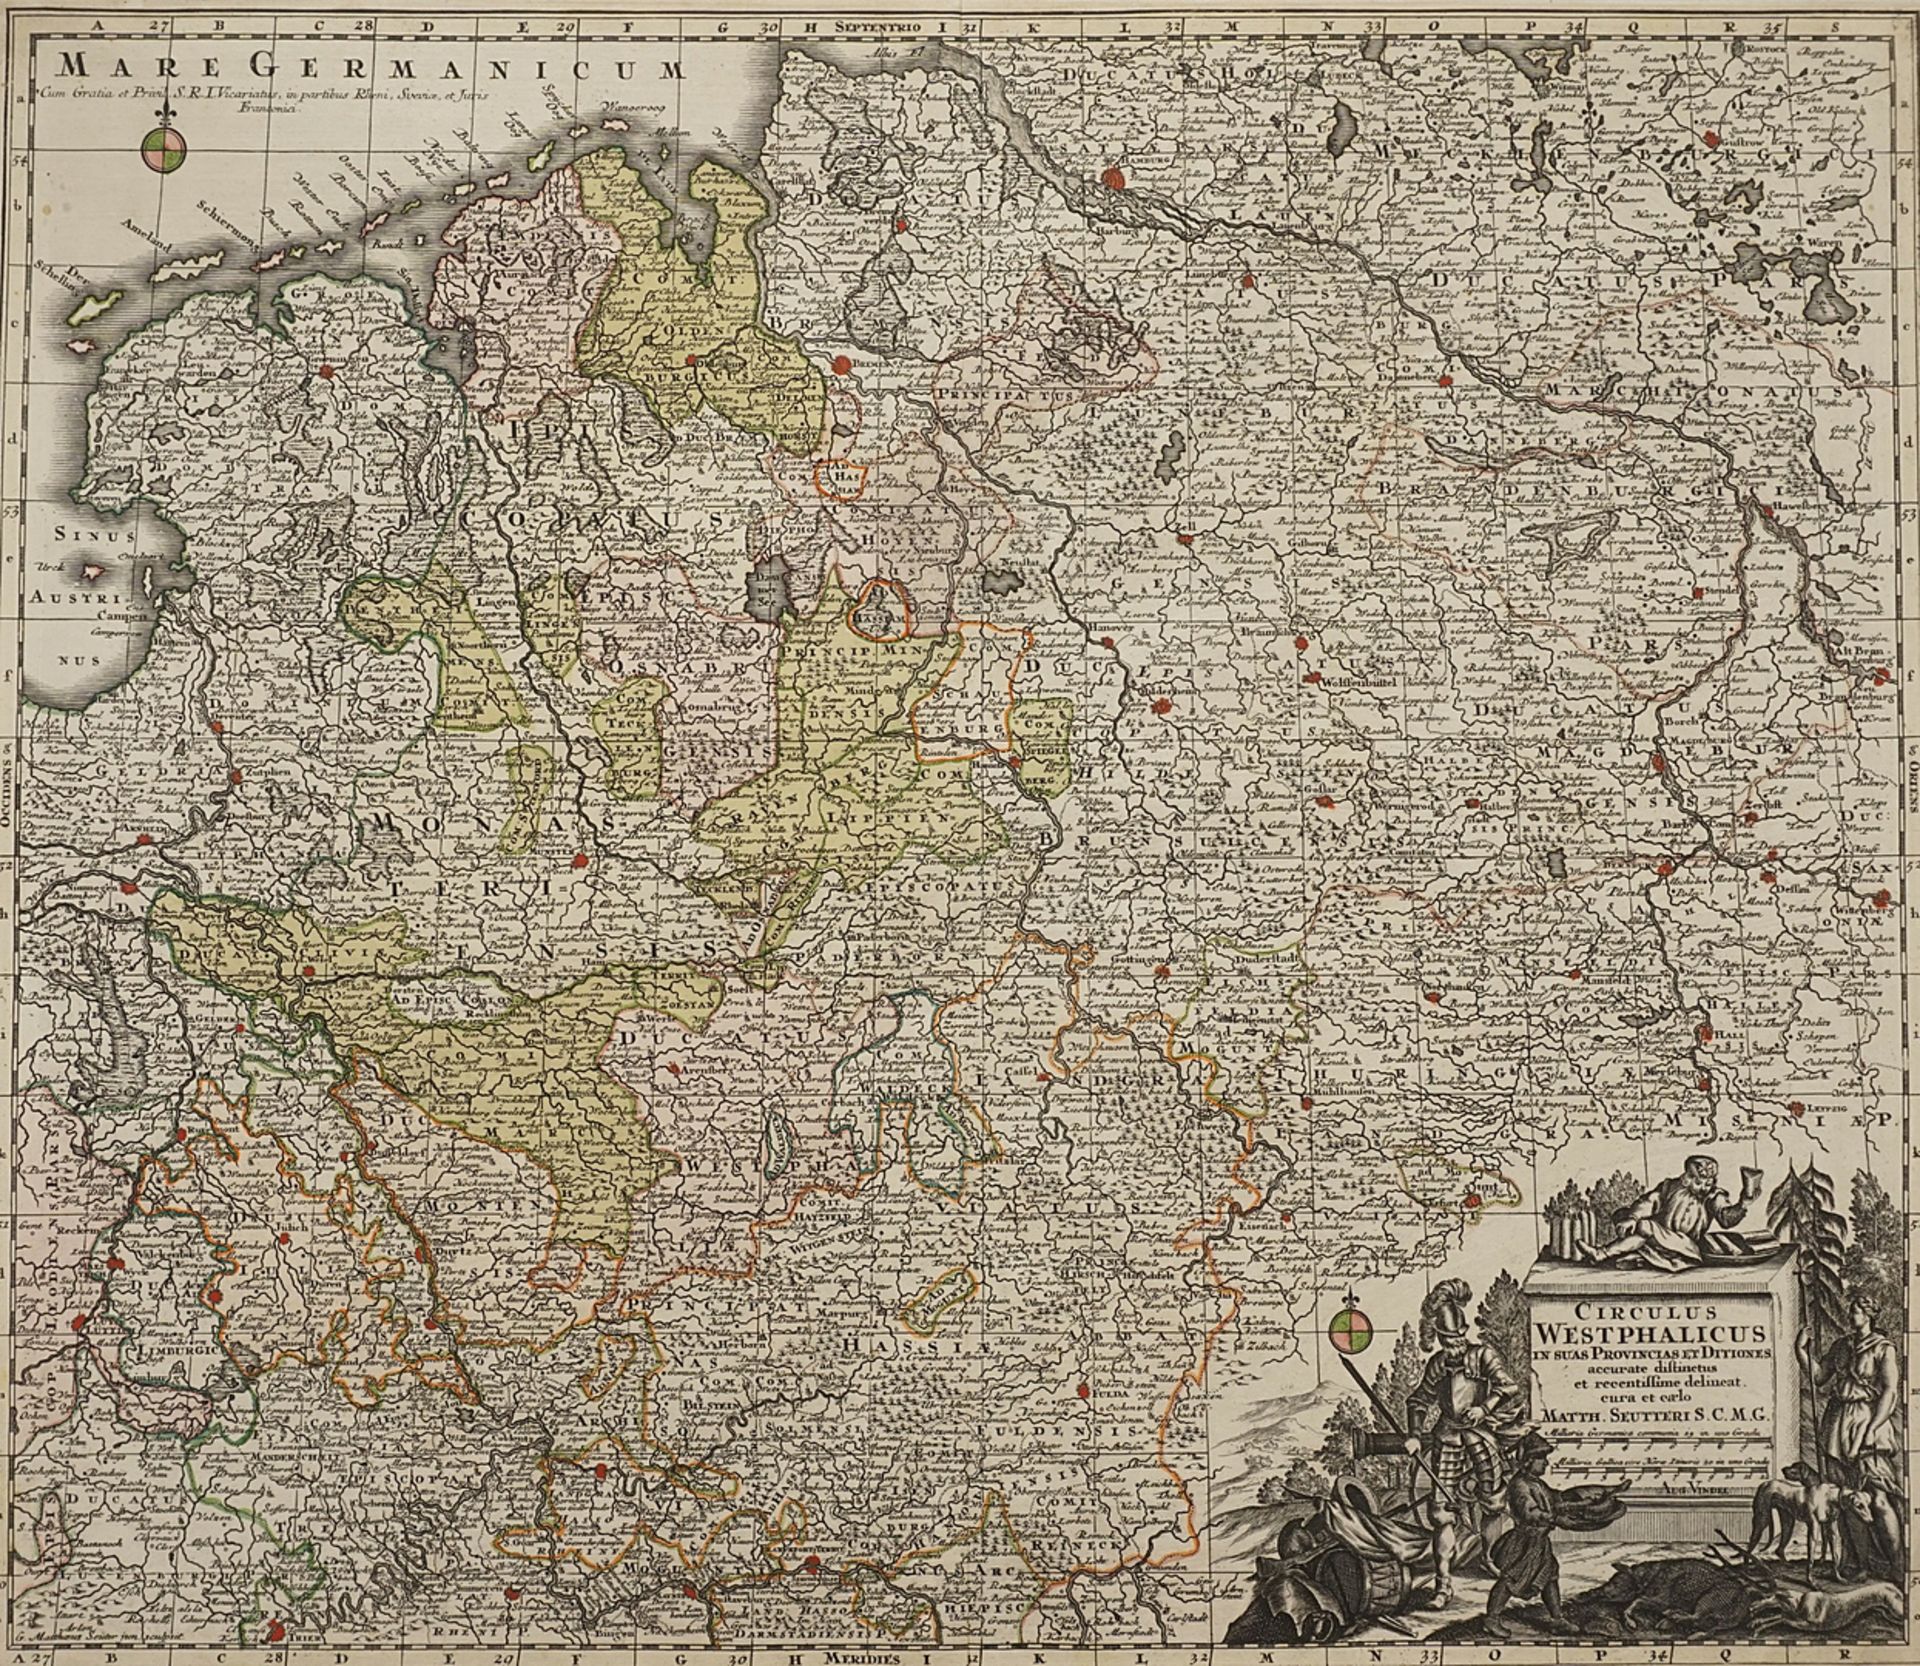 Matthäus Seutter, "Circulus Westphalicus" (Karte vom Kreis Westfalen)